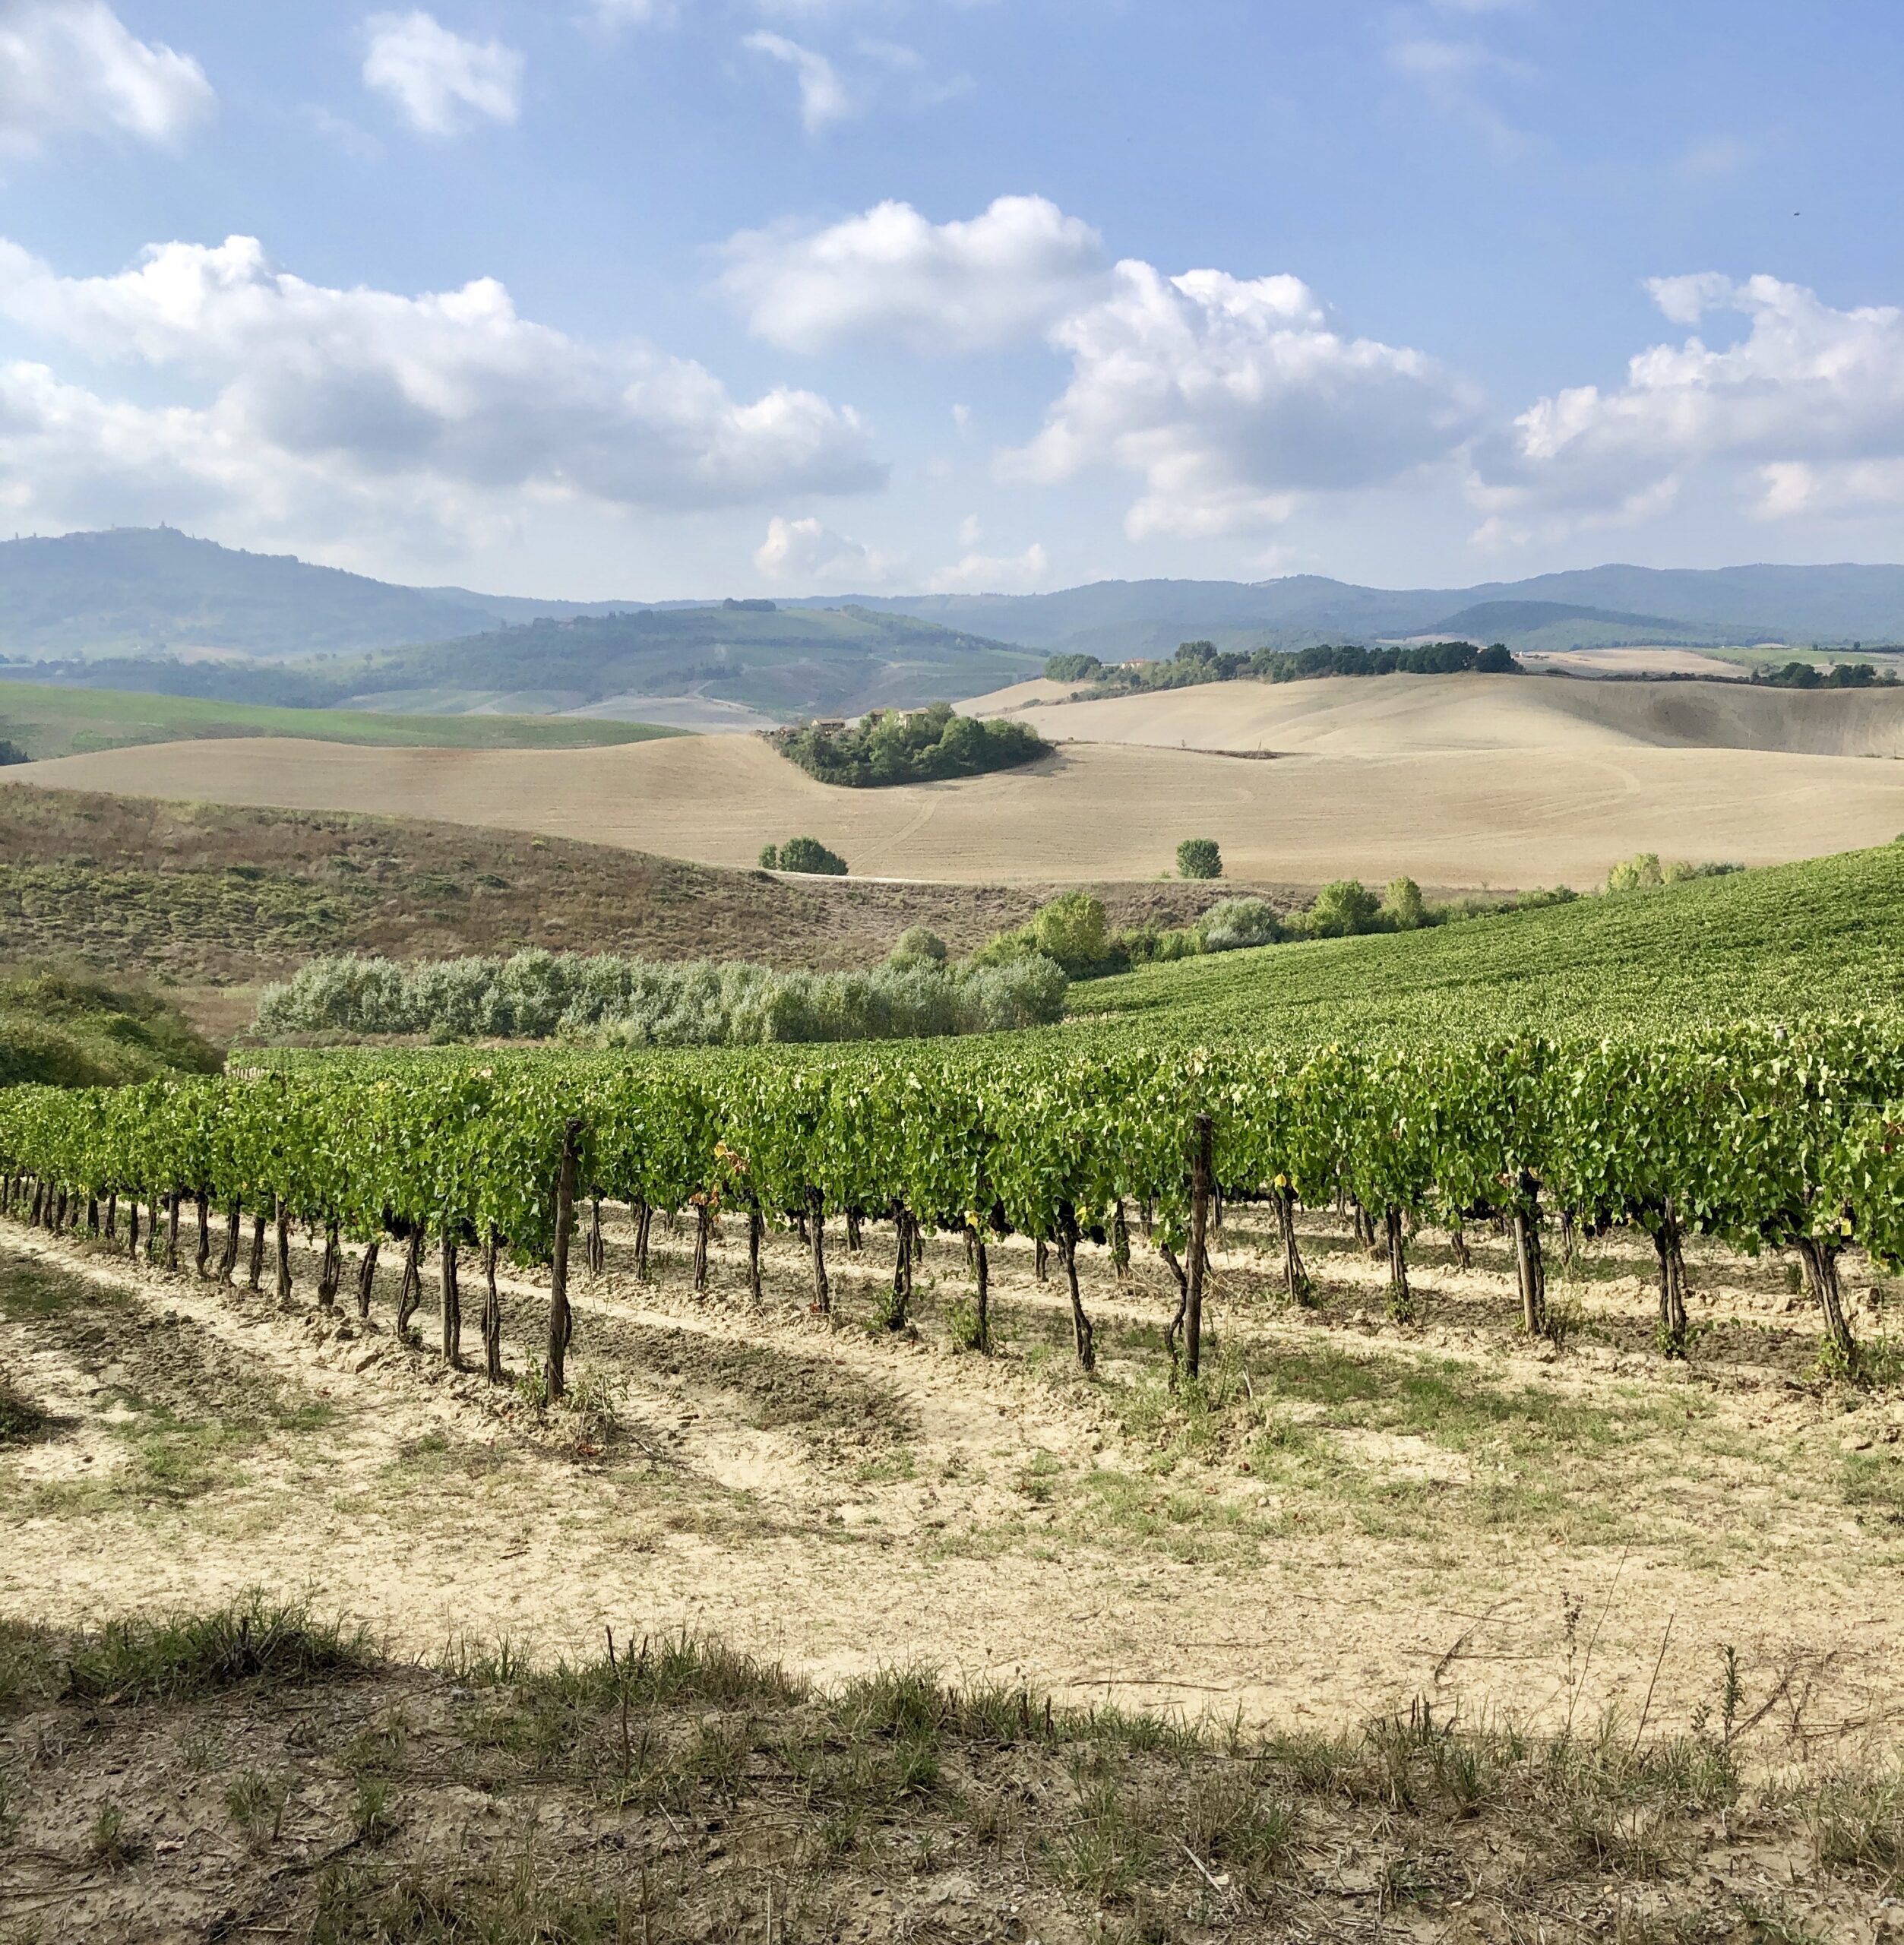 Monalchino vineyards